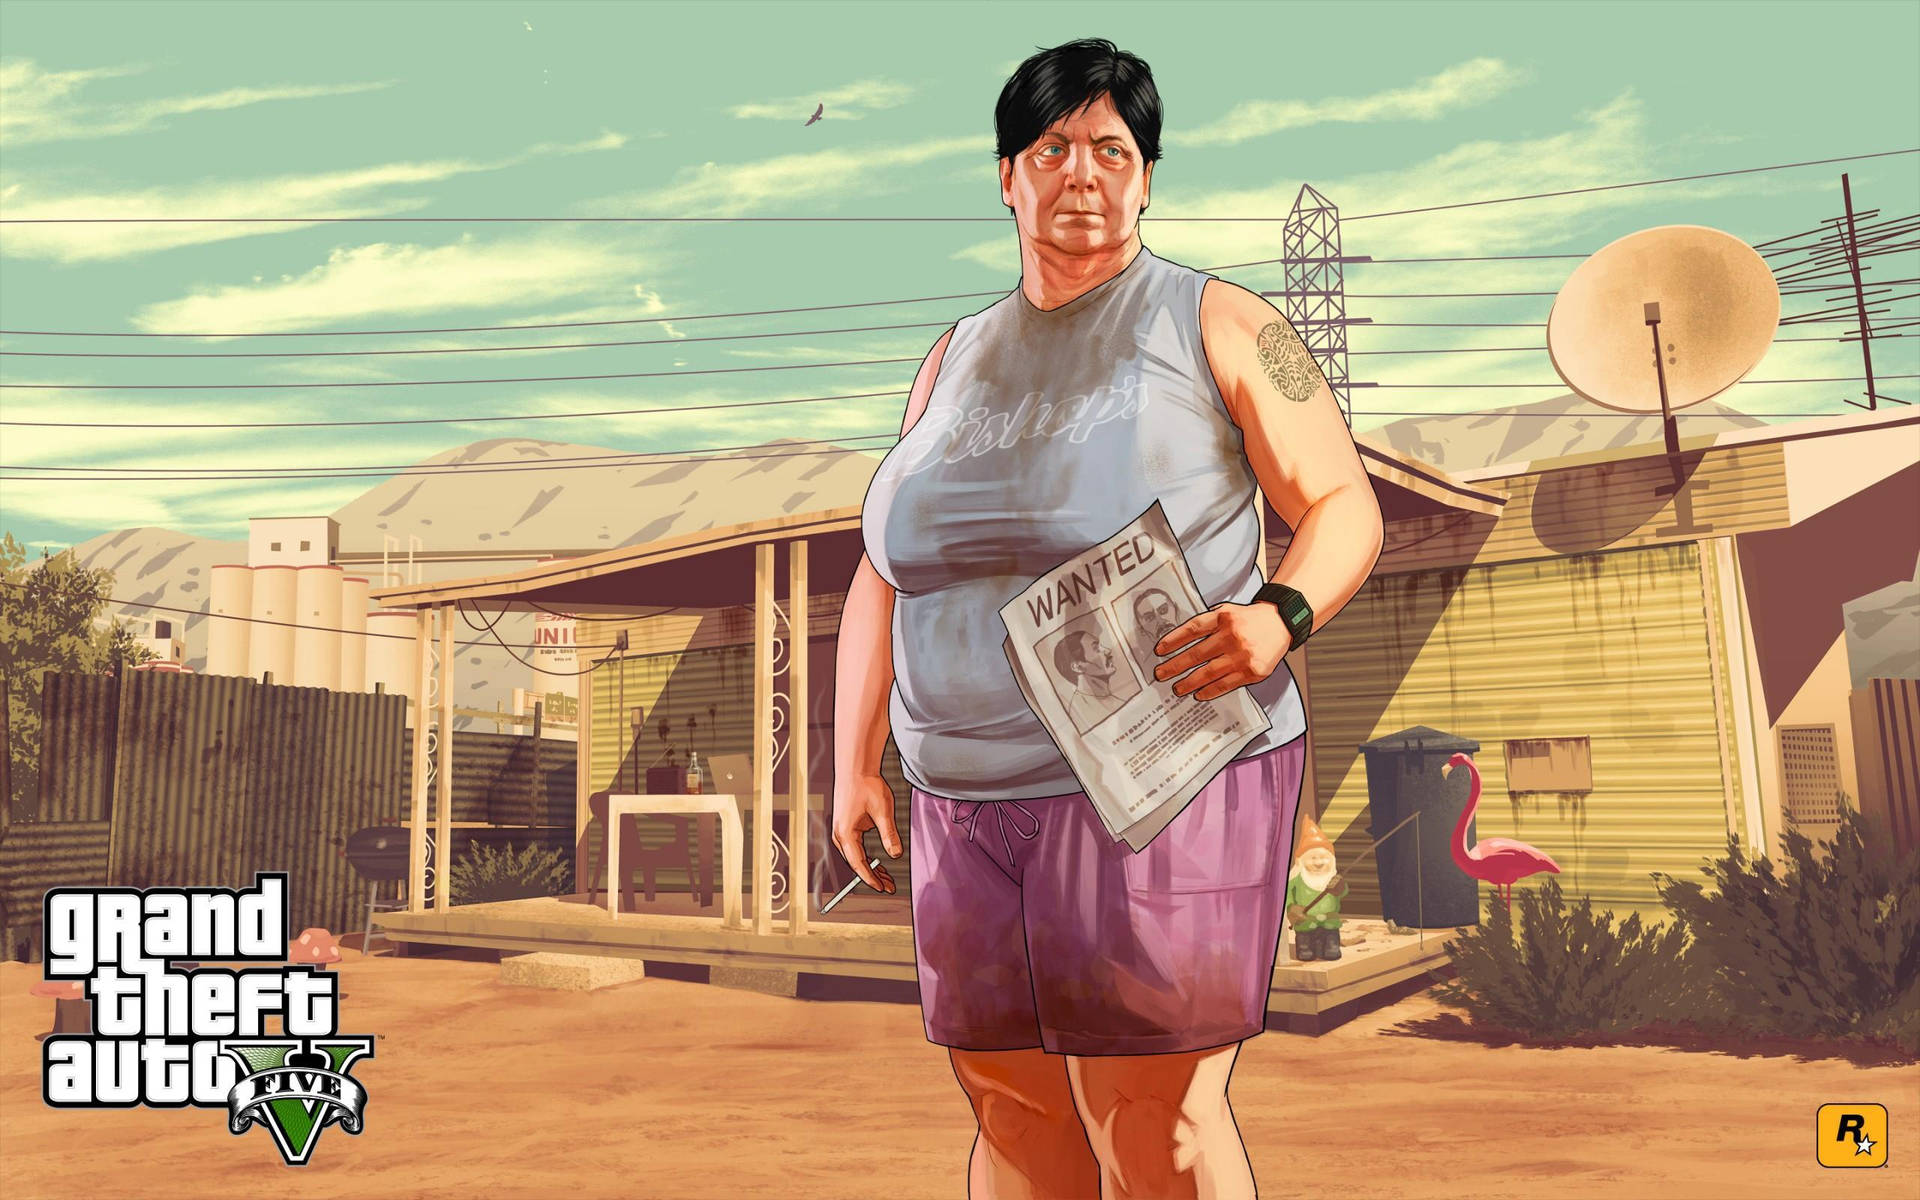 Grand Theft Auto V Maude Background